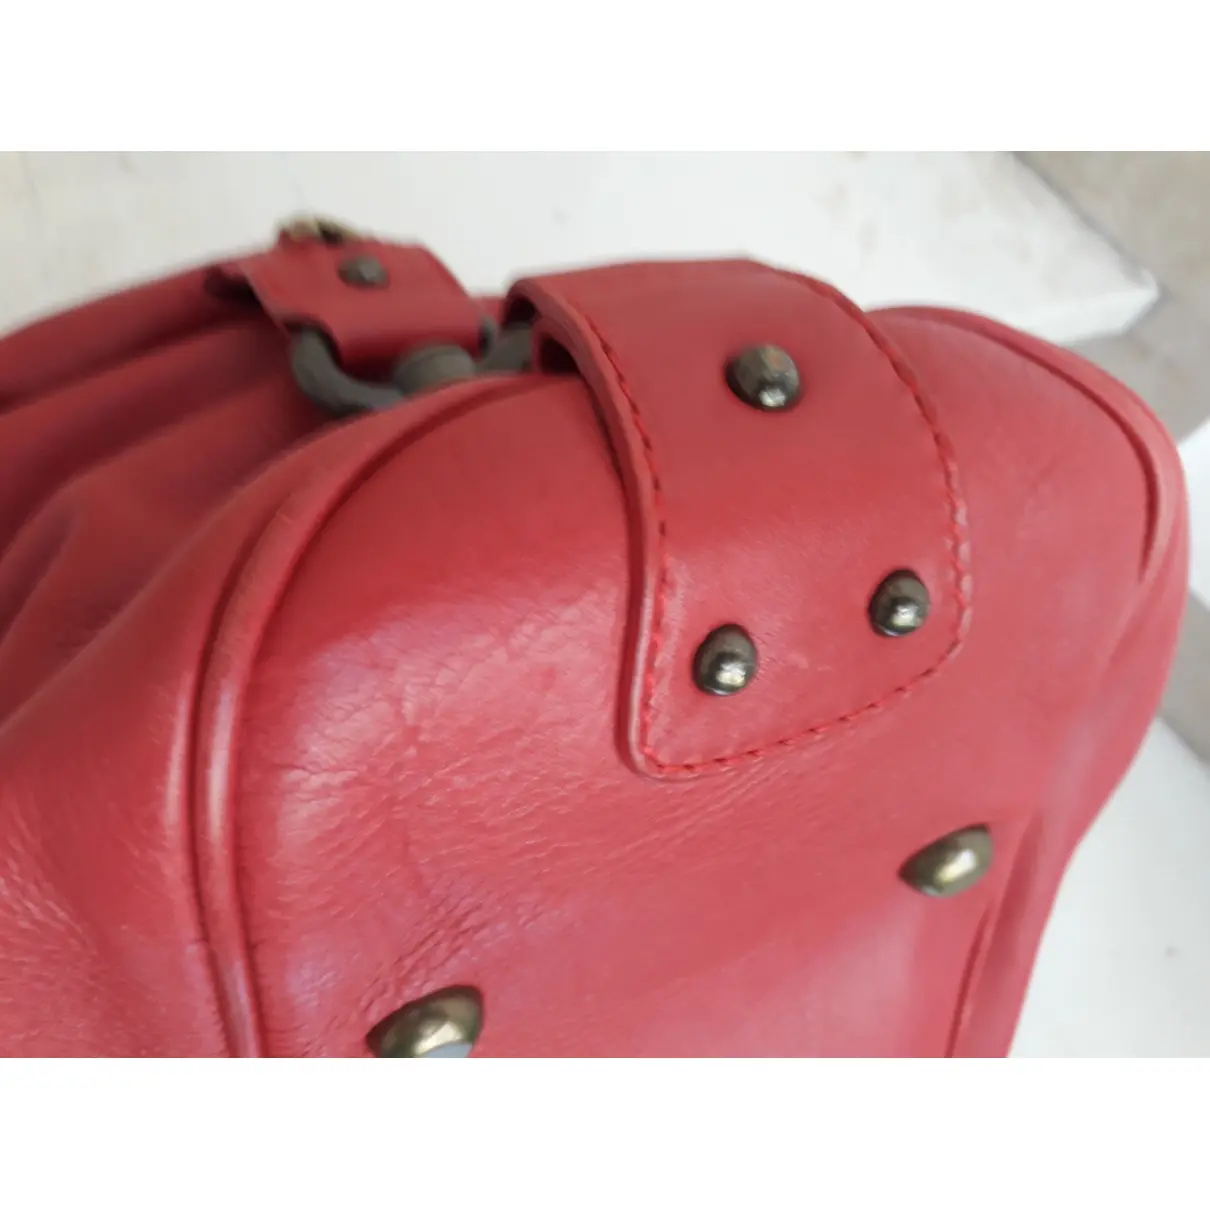 Buy Marc Jacobs Leather handbag online - Vintage